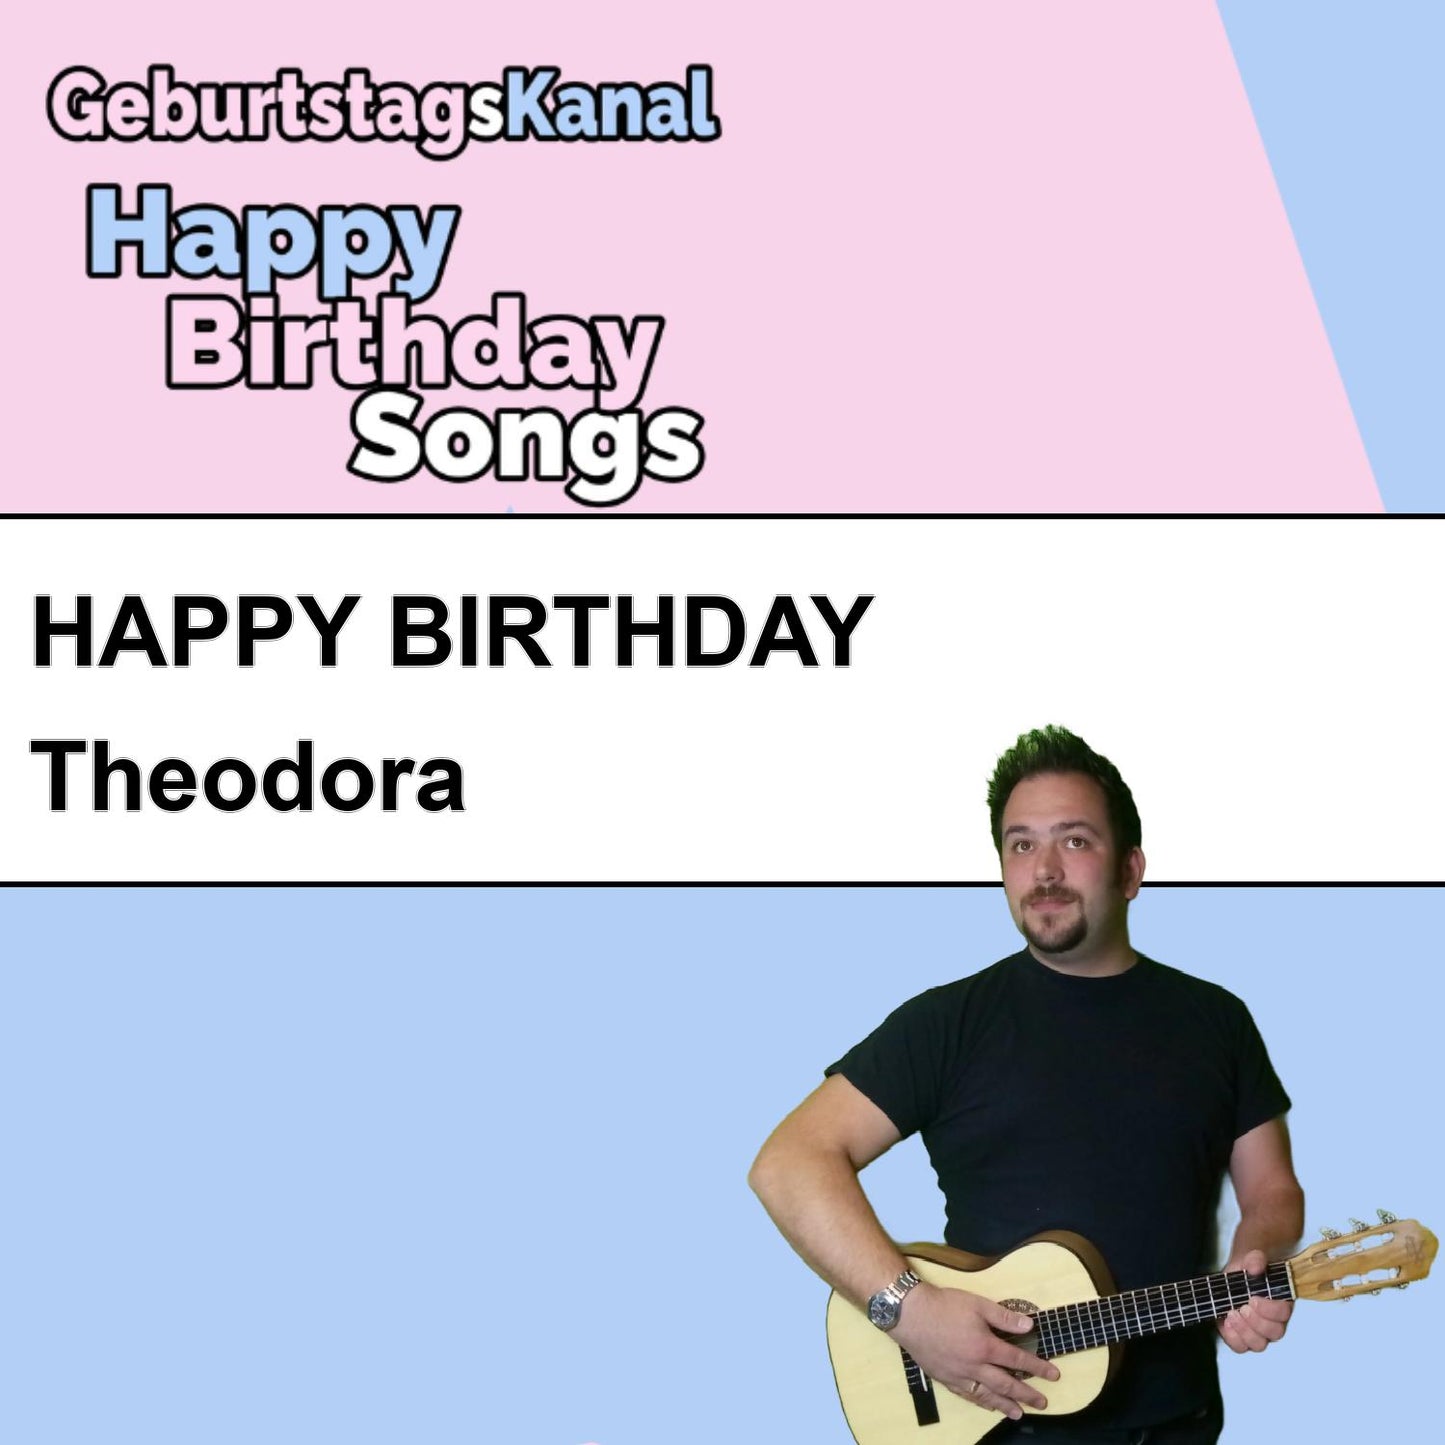 Produktbild Happy Birthday to you Theodora mit Wunschgrußbotschaft